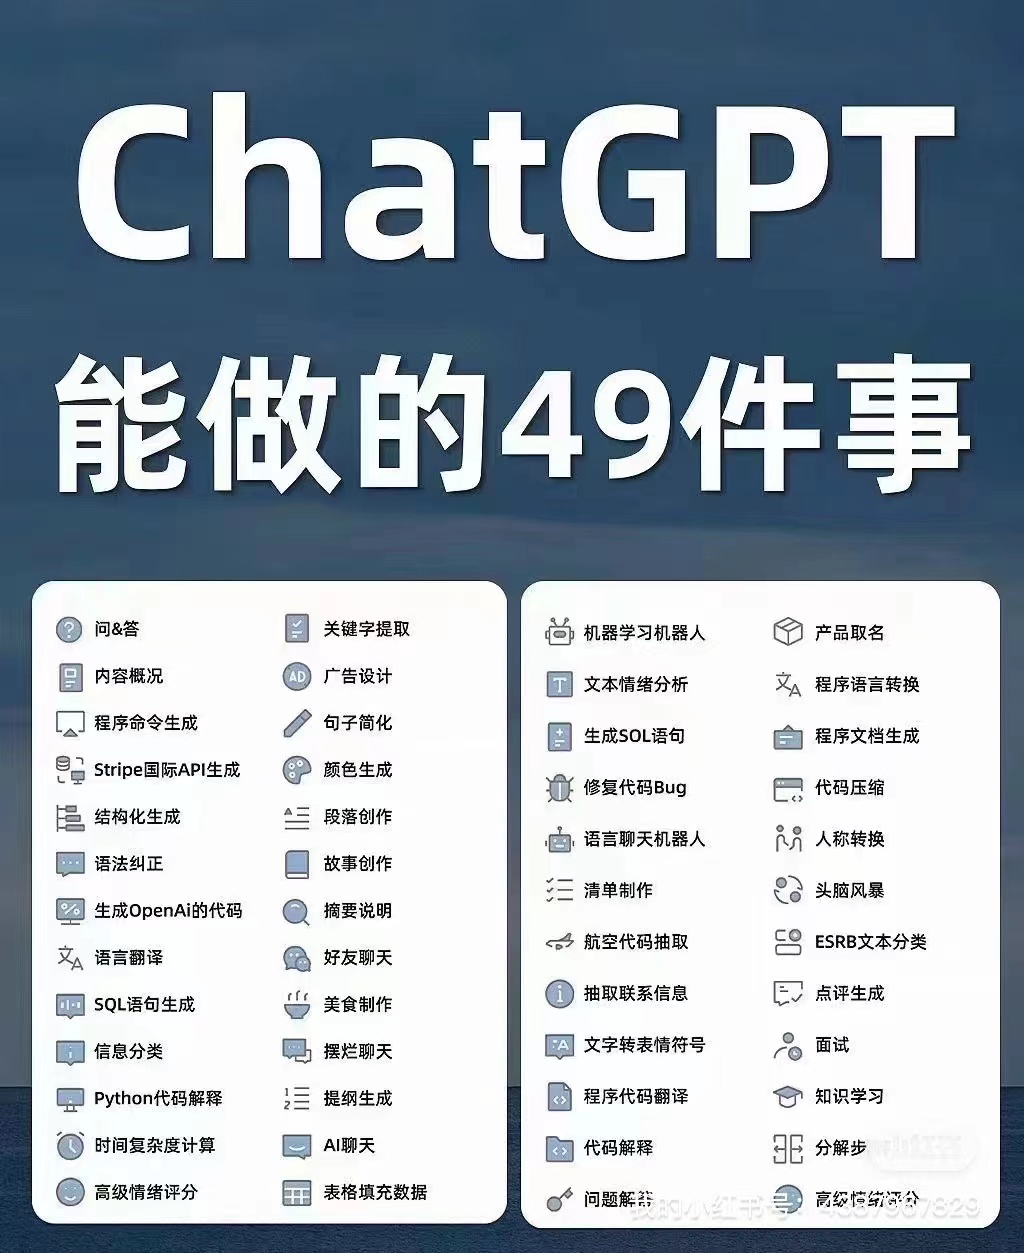 为什么chatGPT中文版不需要梯子🪜翻墙，在中国是合法合规的？？